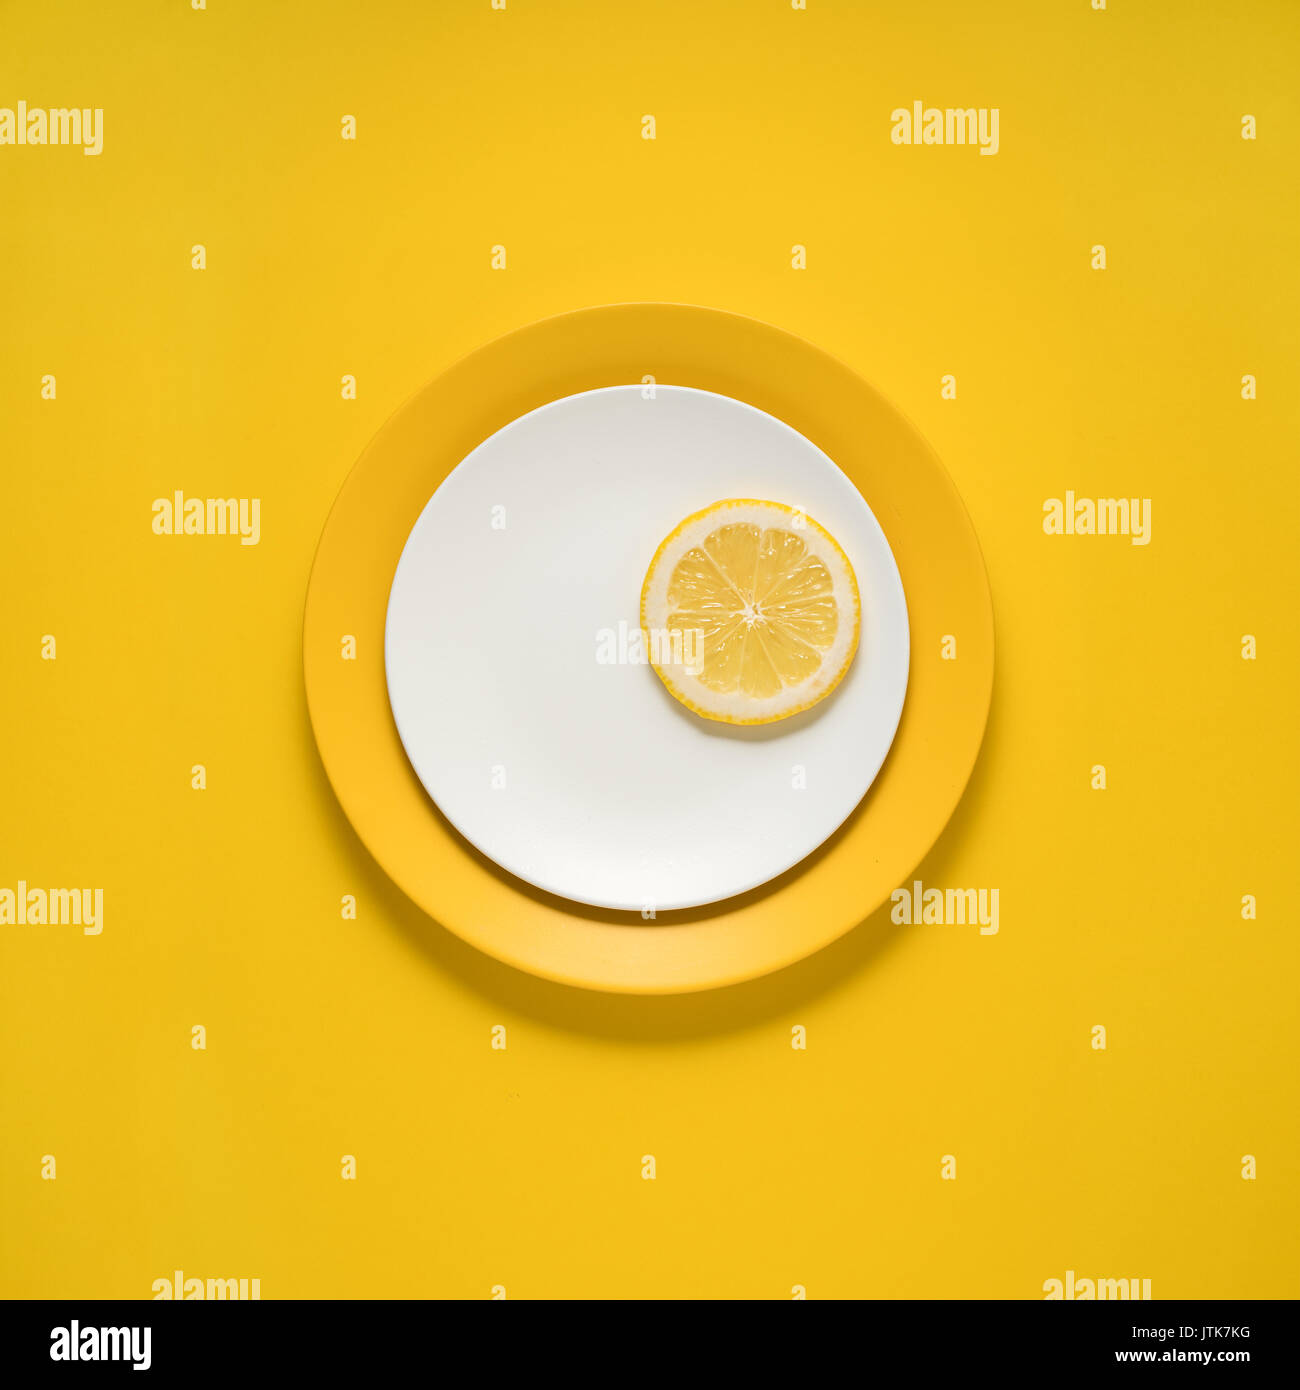 Concept créatif photo d'ustensiles de cuisine, plaque peinte avec de la nourriture sur elle sur fond jaune. Banque D'Images